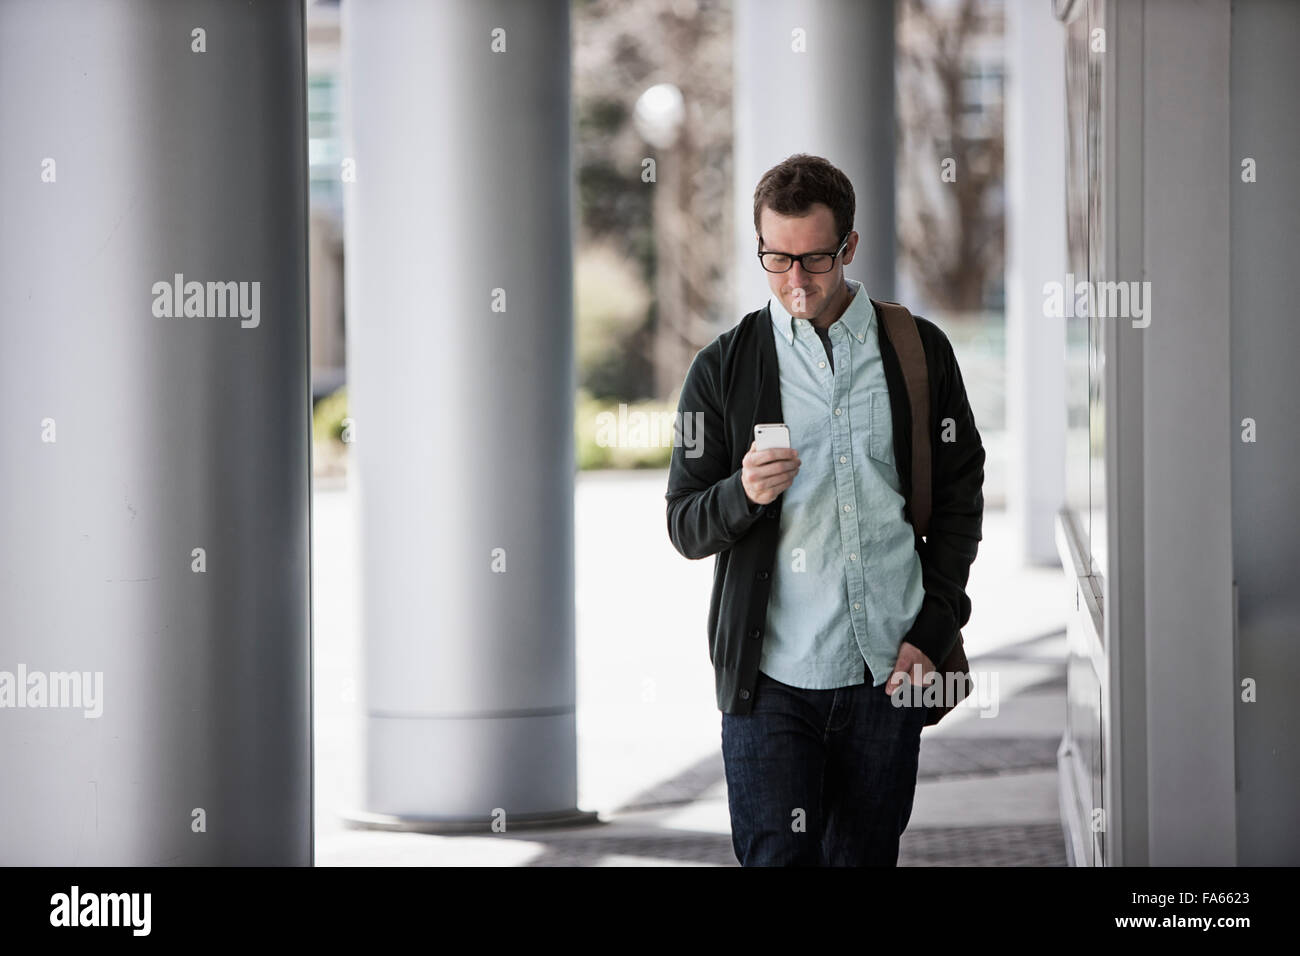 Ein Mann in Freizeitkleidung außerhalb eines Gebäudes stehen, sein Smartphone überprüfen. Stockfoto